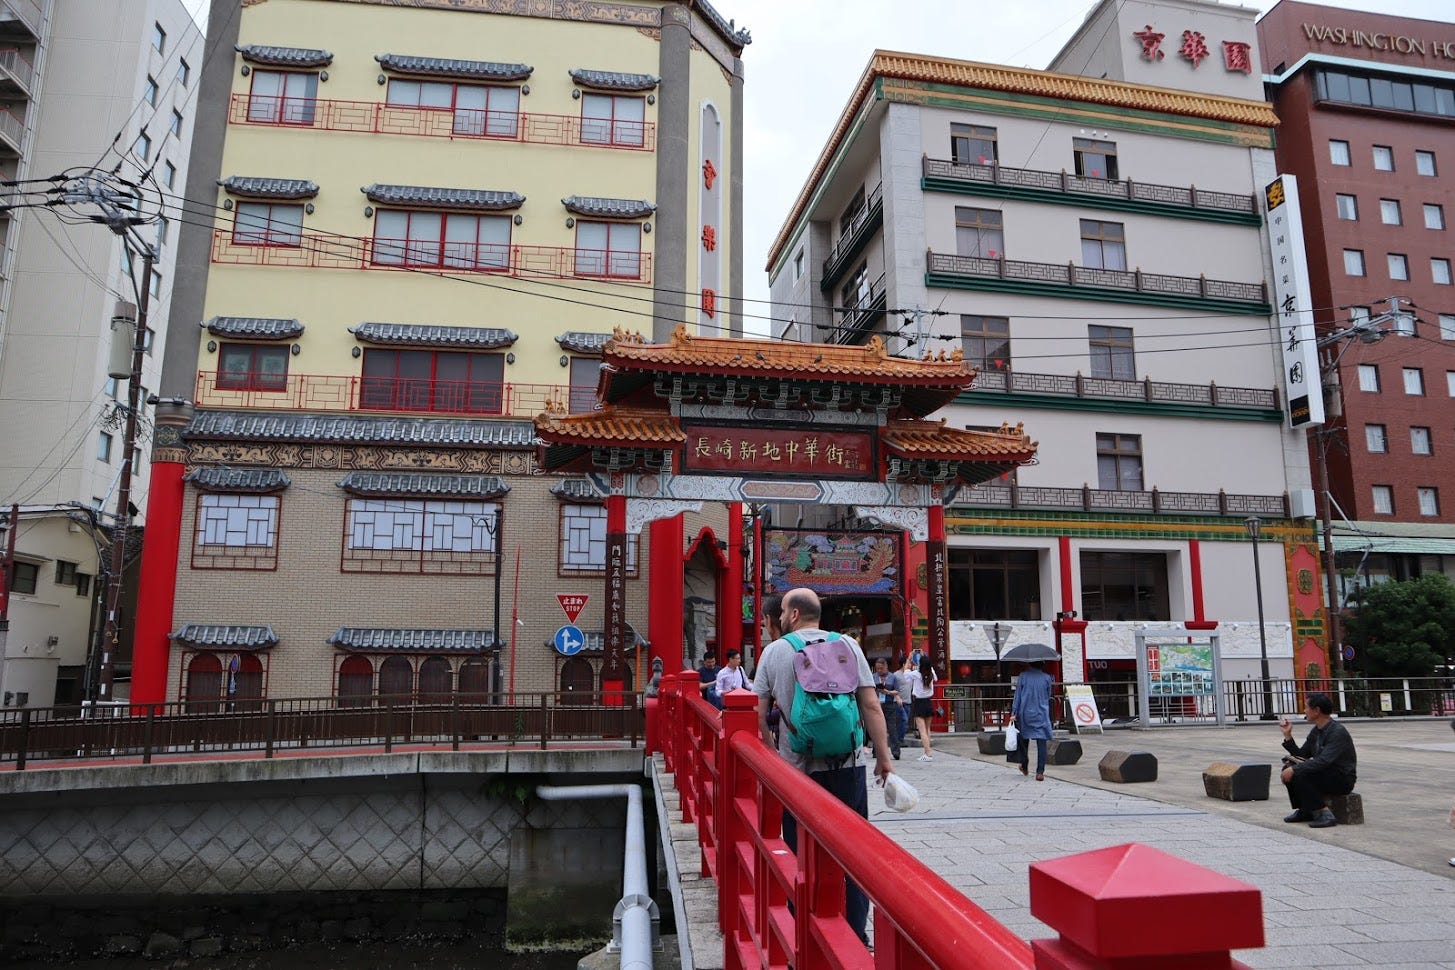 ซุ้มประตูทางเข้า China Town